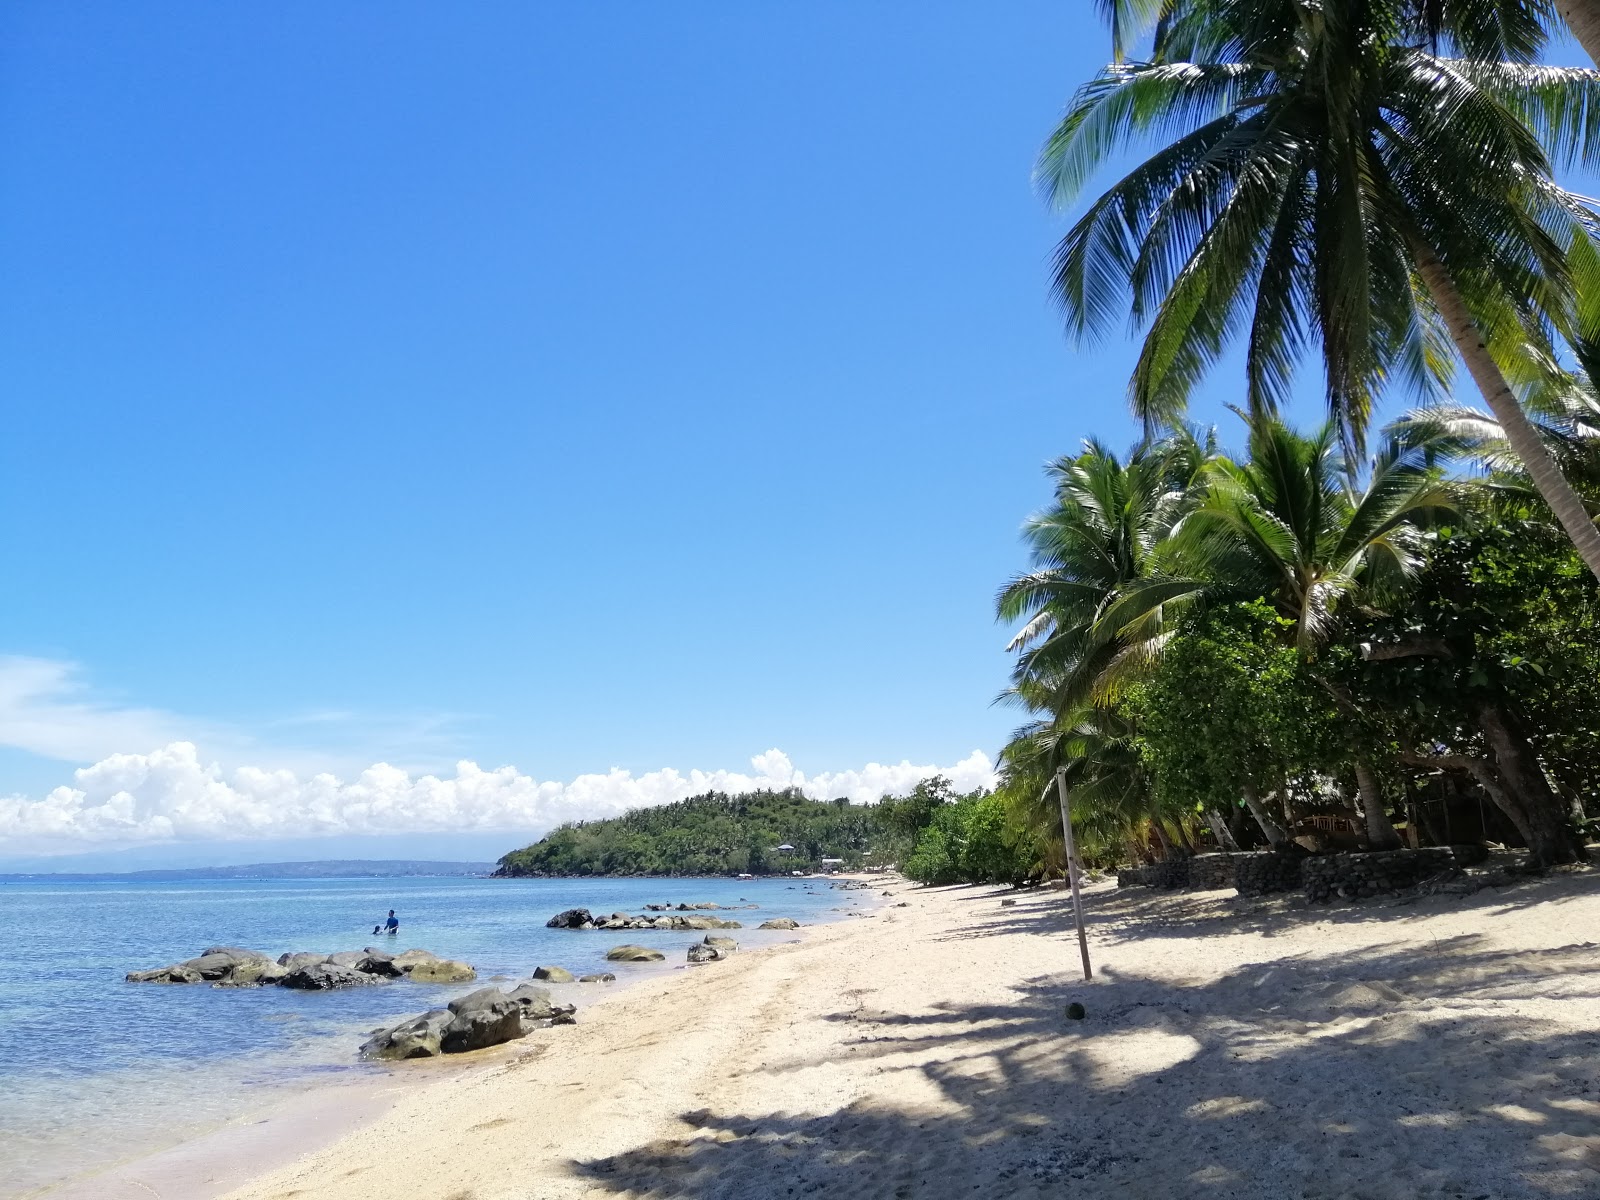 Pili Beach'in fotoğrafı geniş plaj ile birlikte